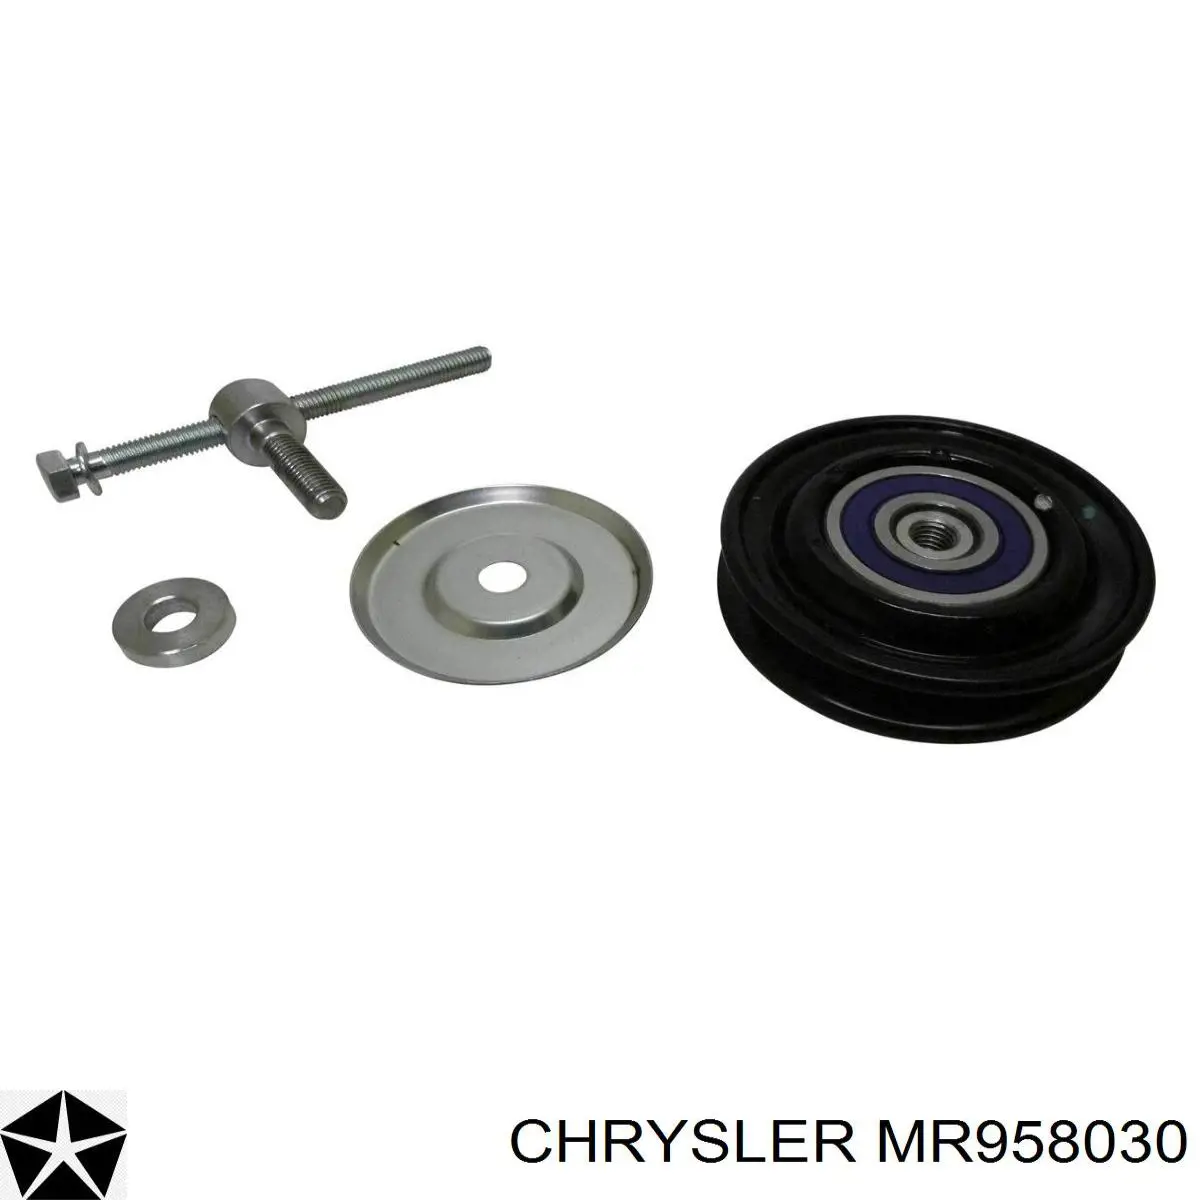 MR958030 Chrysler polea tensora, correa poli v